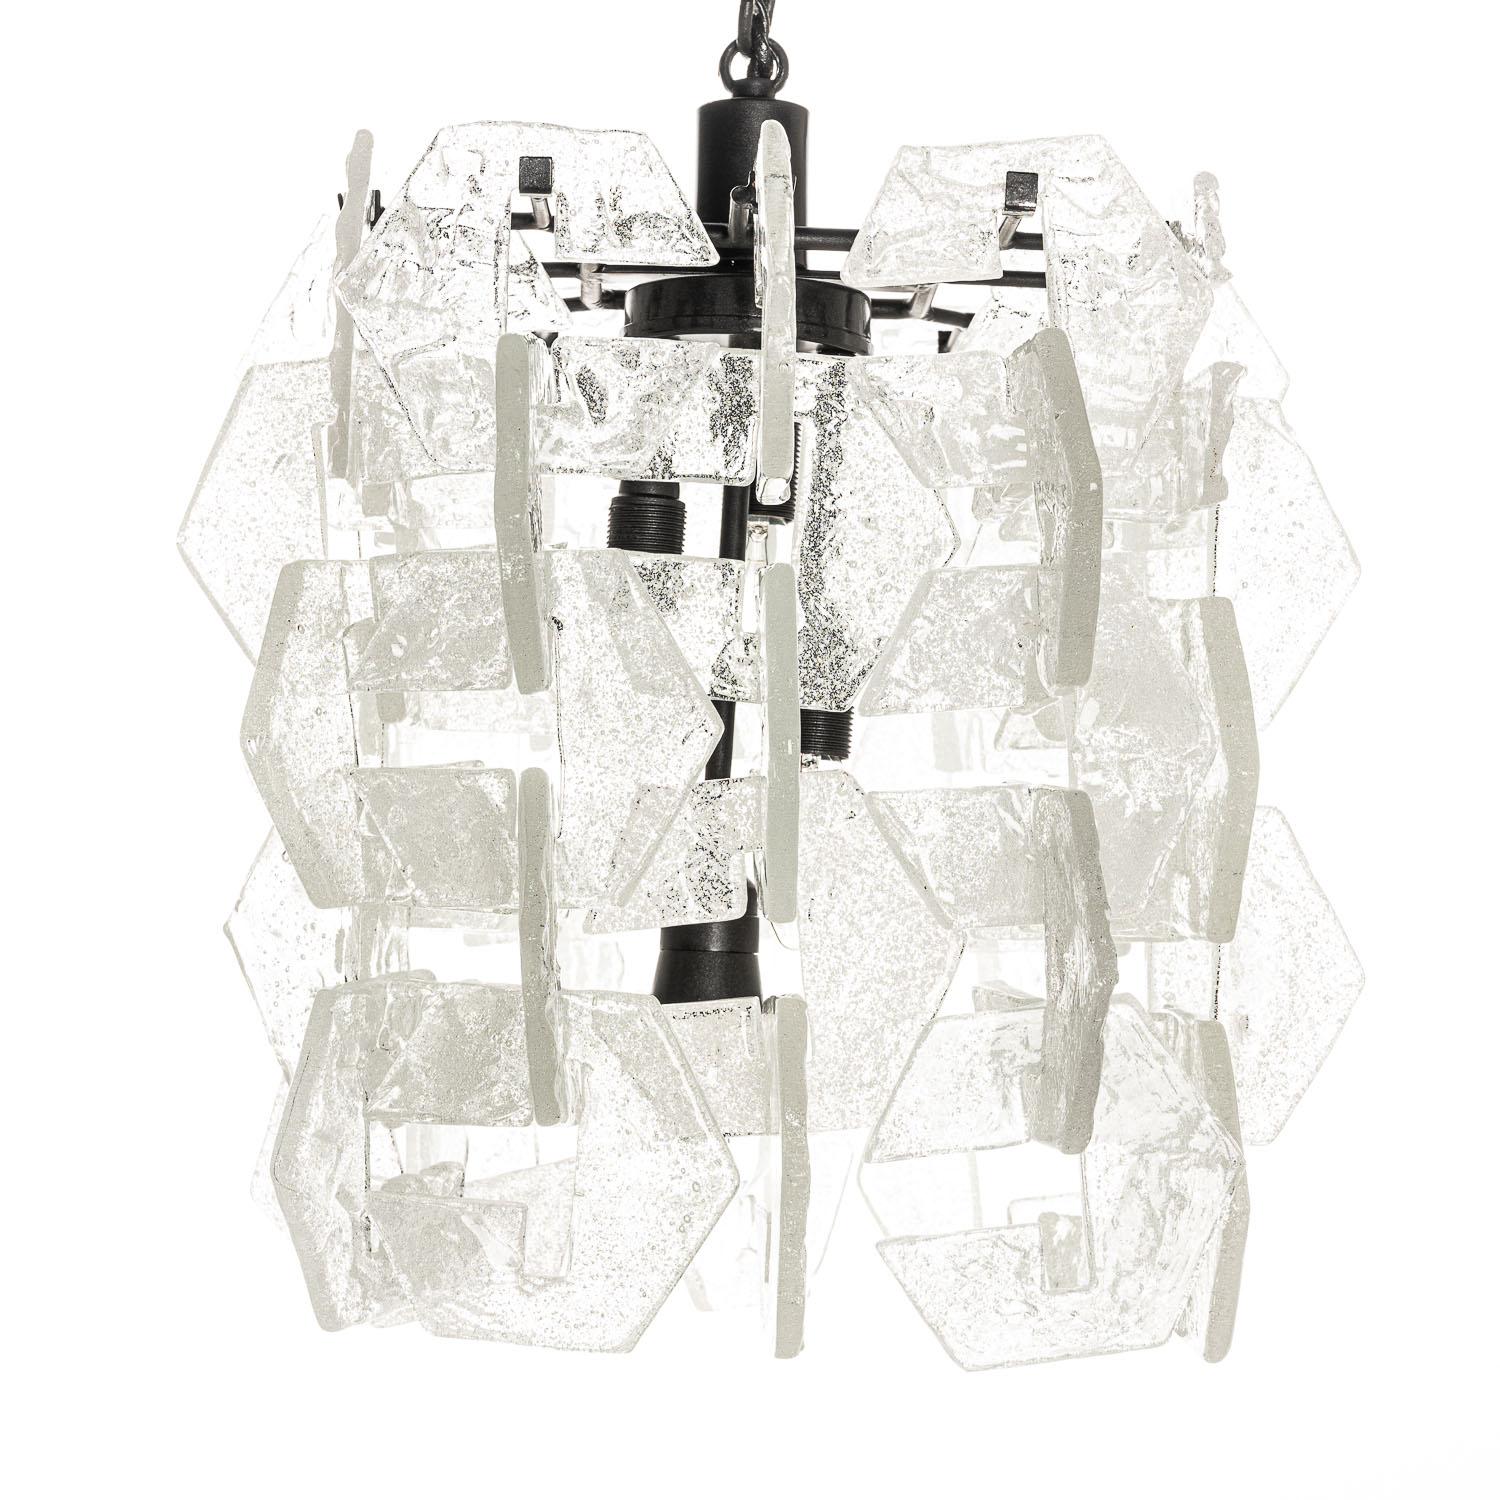 Dieses Stück stammt von dem Designer Carlo Nason. 60 strukturierte Teile, die die vier Glühbirnen umgeben, sind einzigartig und elegant in ihrer Form. Wenn es beleuchtet wird, streut es das Licht wunderschön und unterstreicht gleichzeitig die